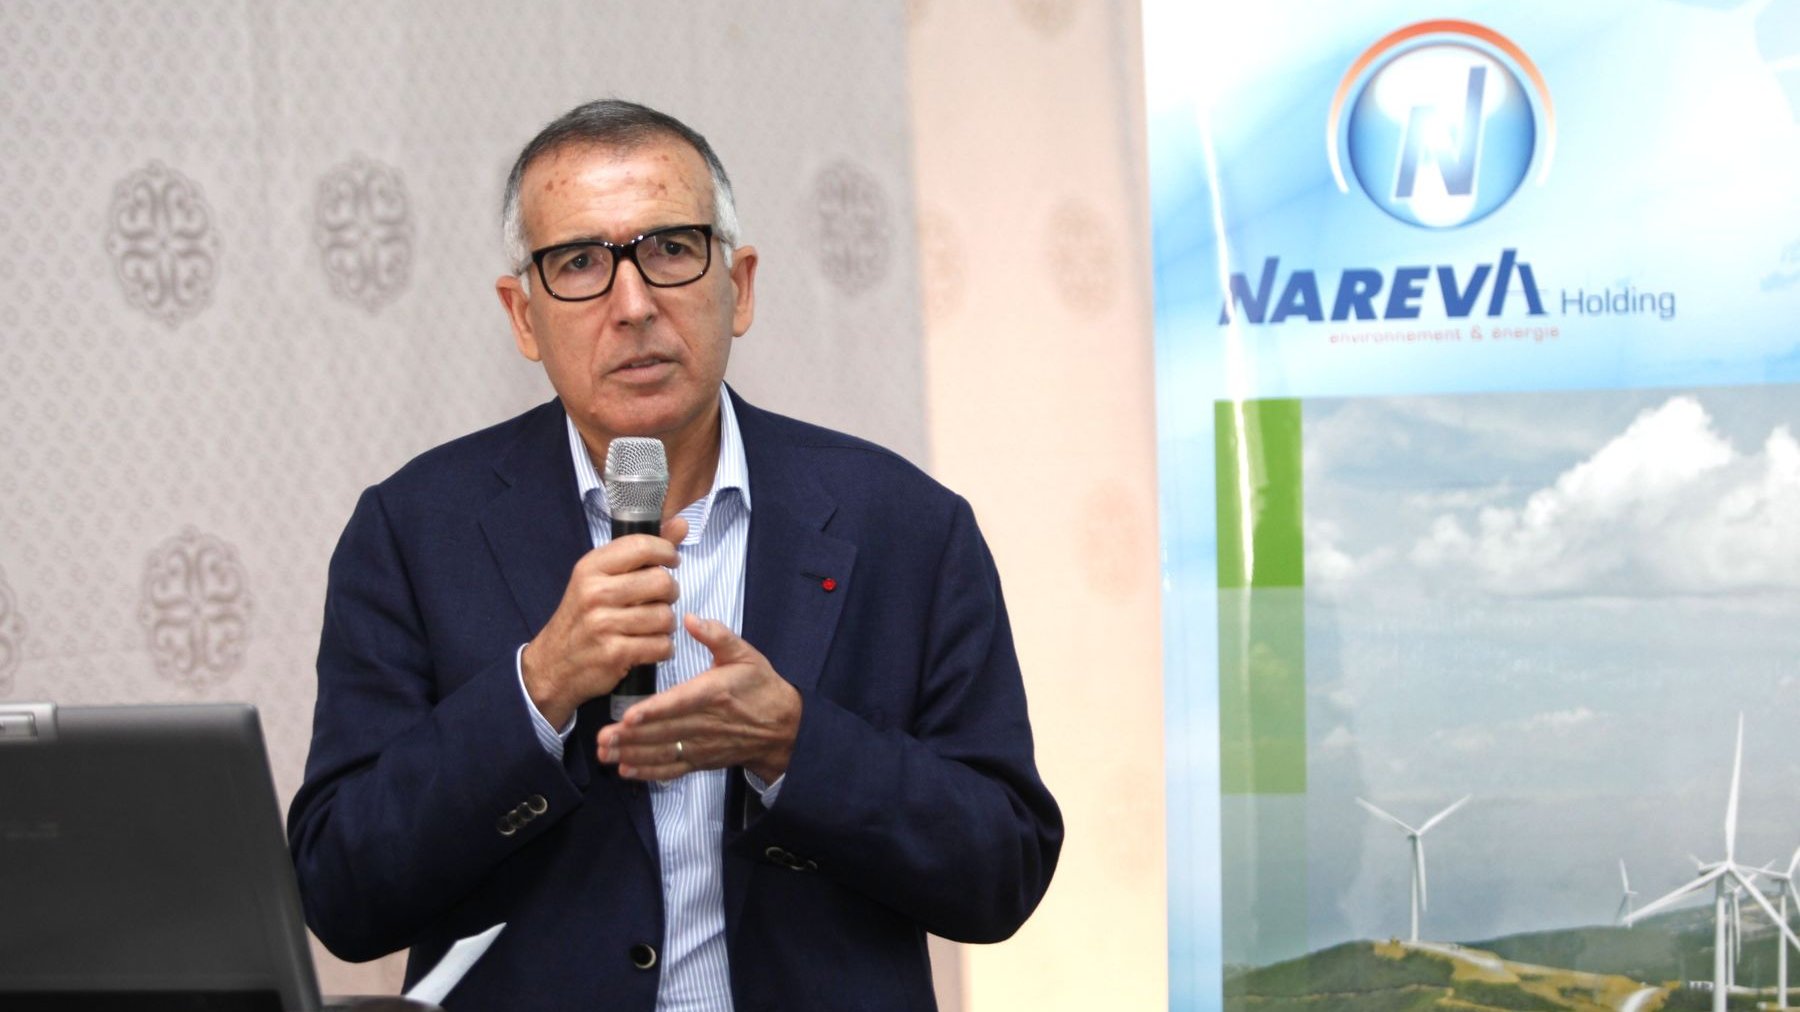 Le PDG de Nareva Holding, Ahmed Nakkouch, a présenté, lundi à Akhfenir, avec beaucoup d'émotion les multiples projets de sa structure.
